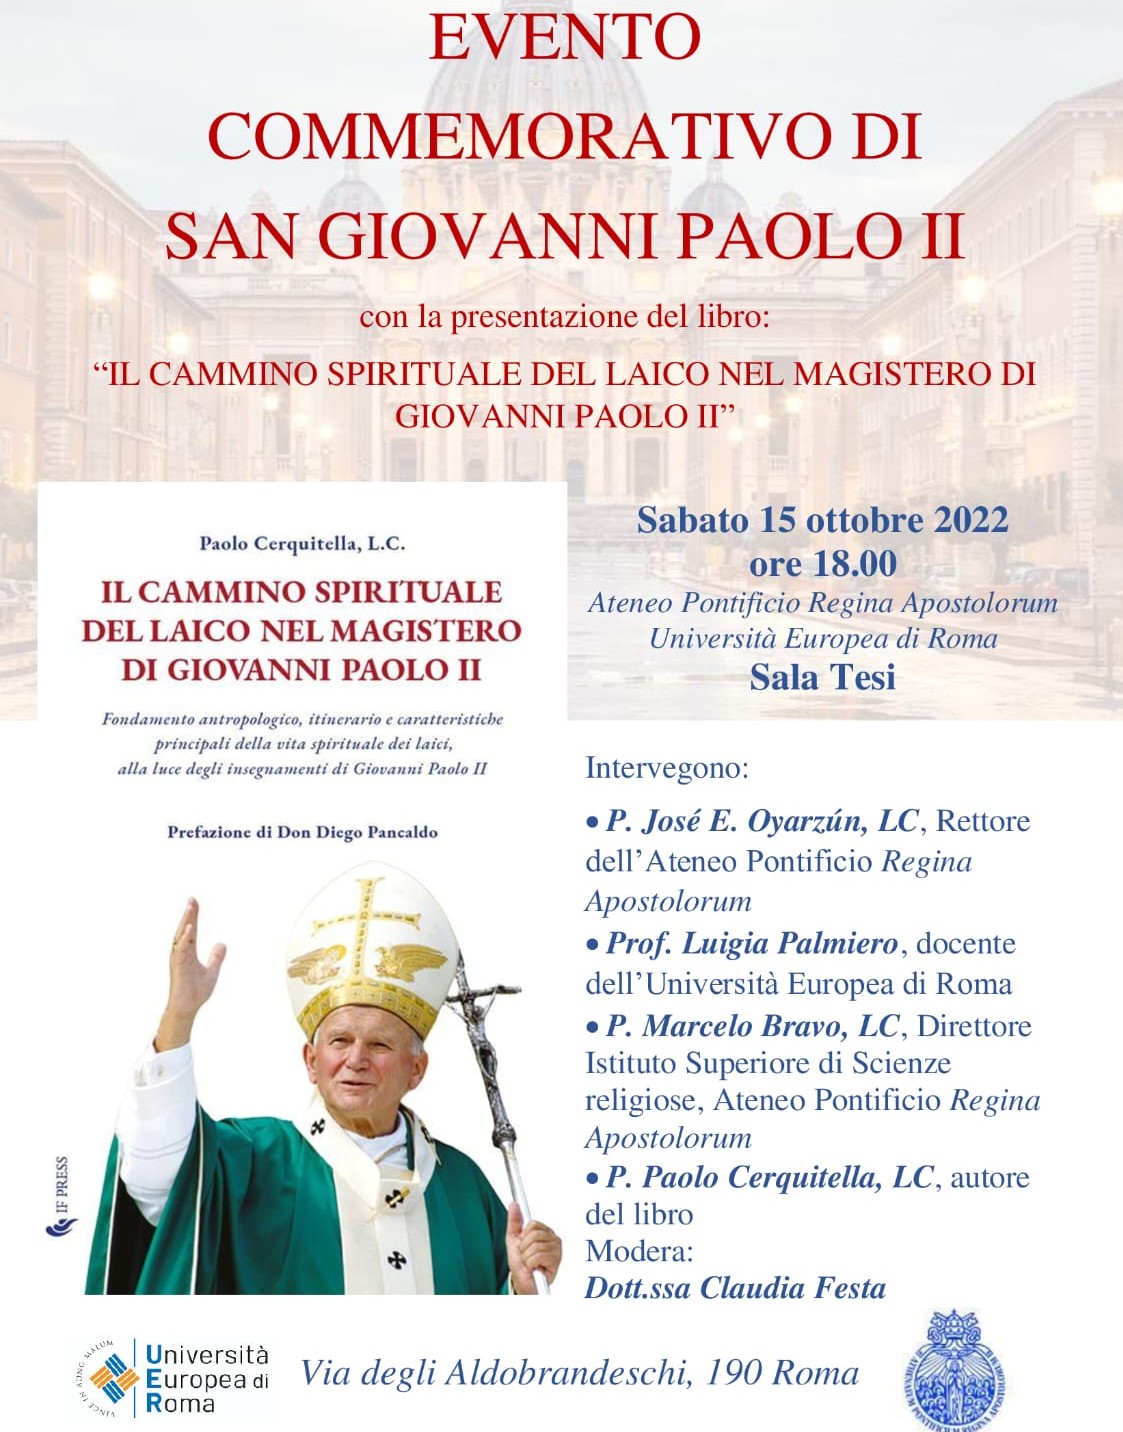 Il cammino di spiritualità del laico nel Magistero di Giovanni Paolo II